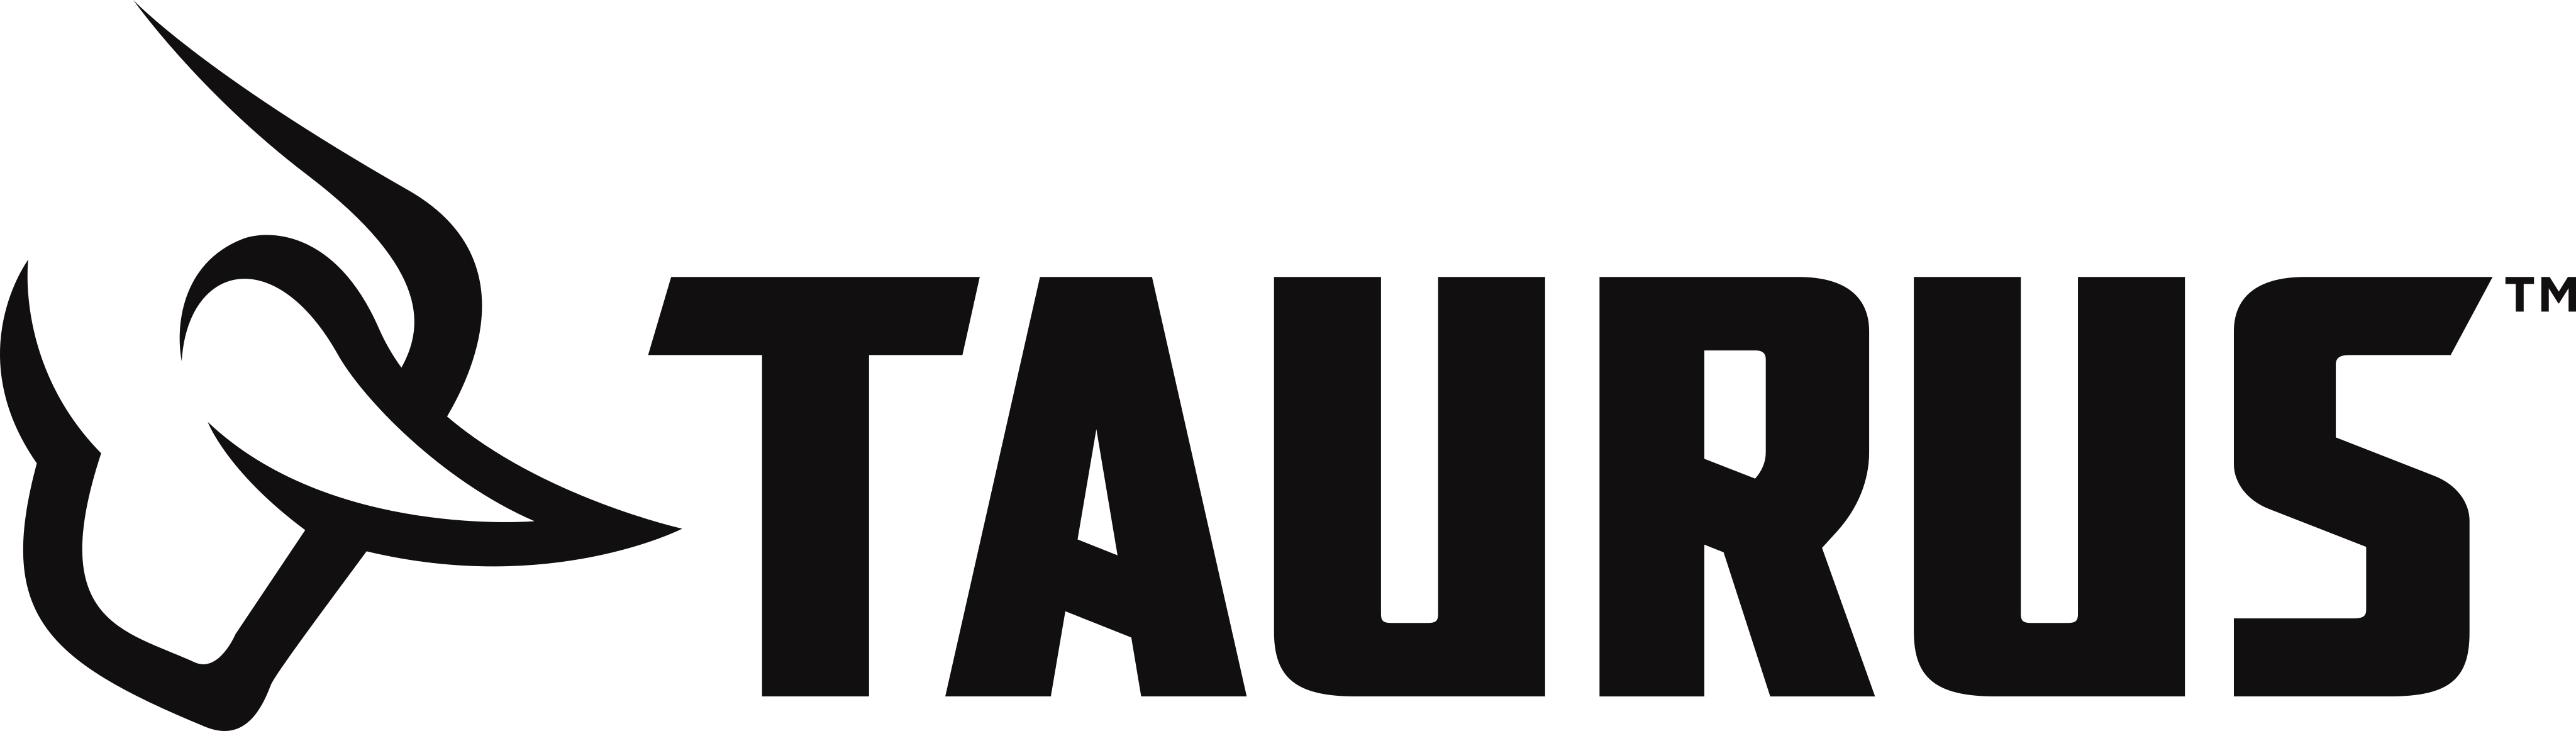 taurus-logo-2-1.png